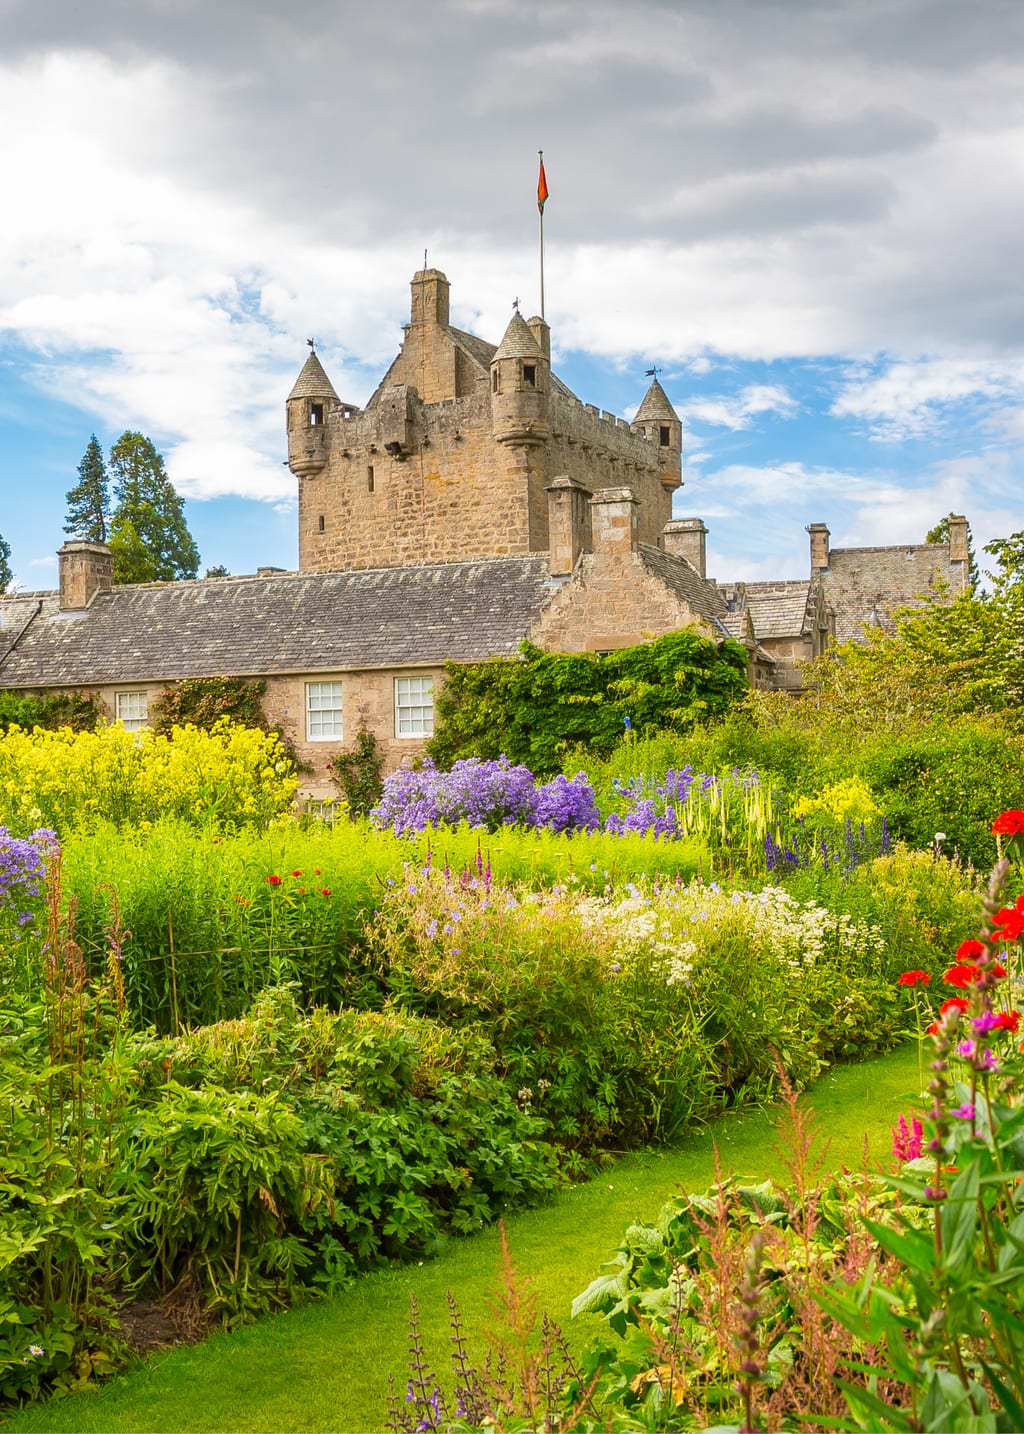 Cawdor Castle and gardens near Inverness, Scotland